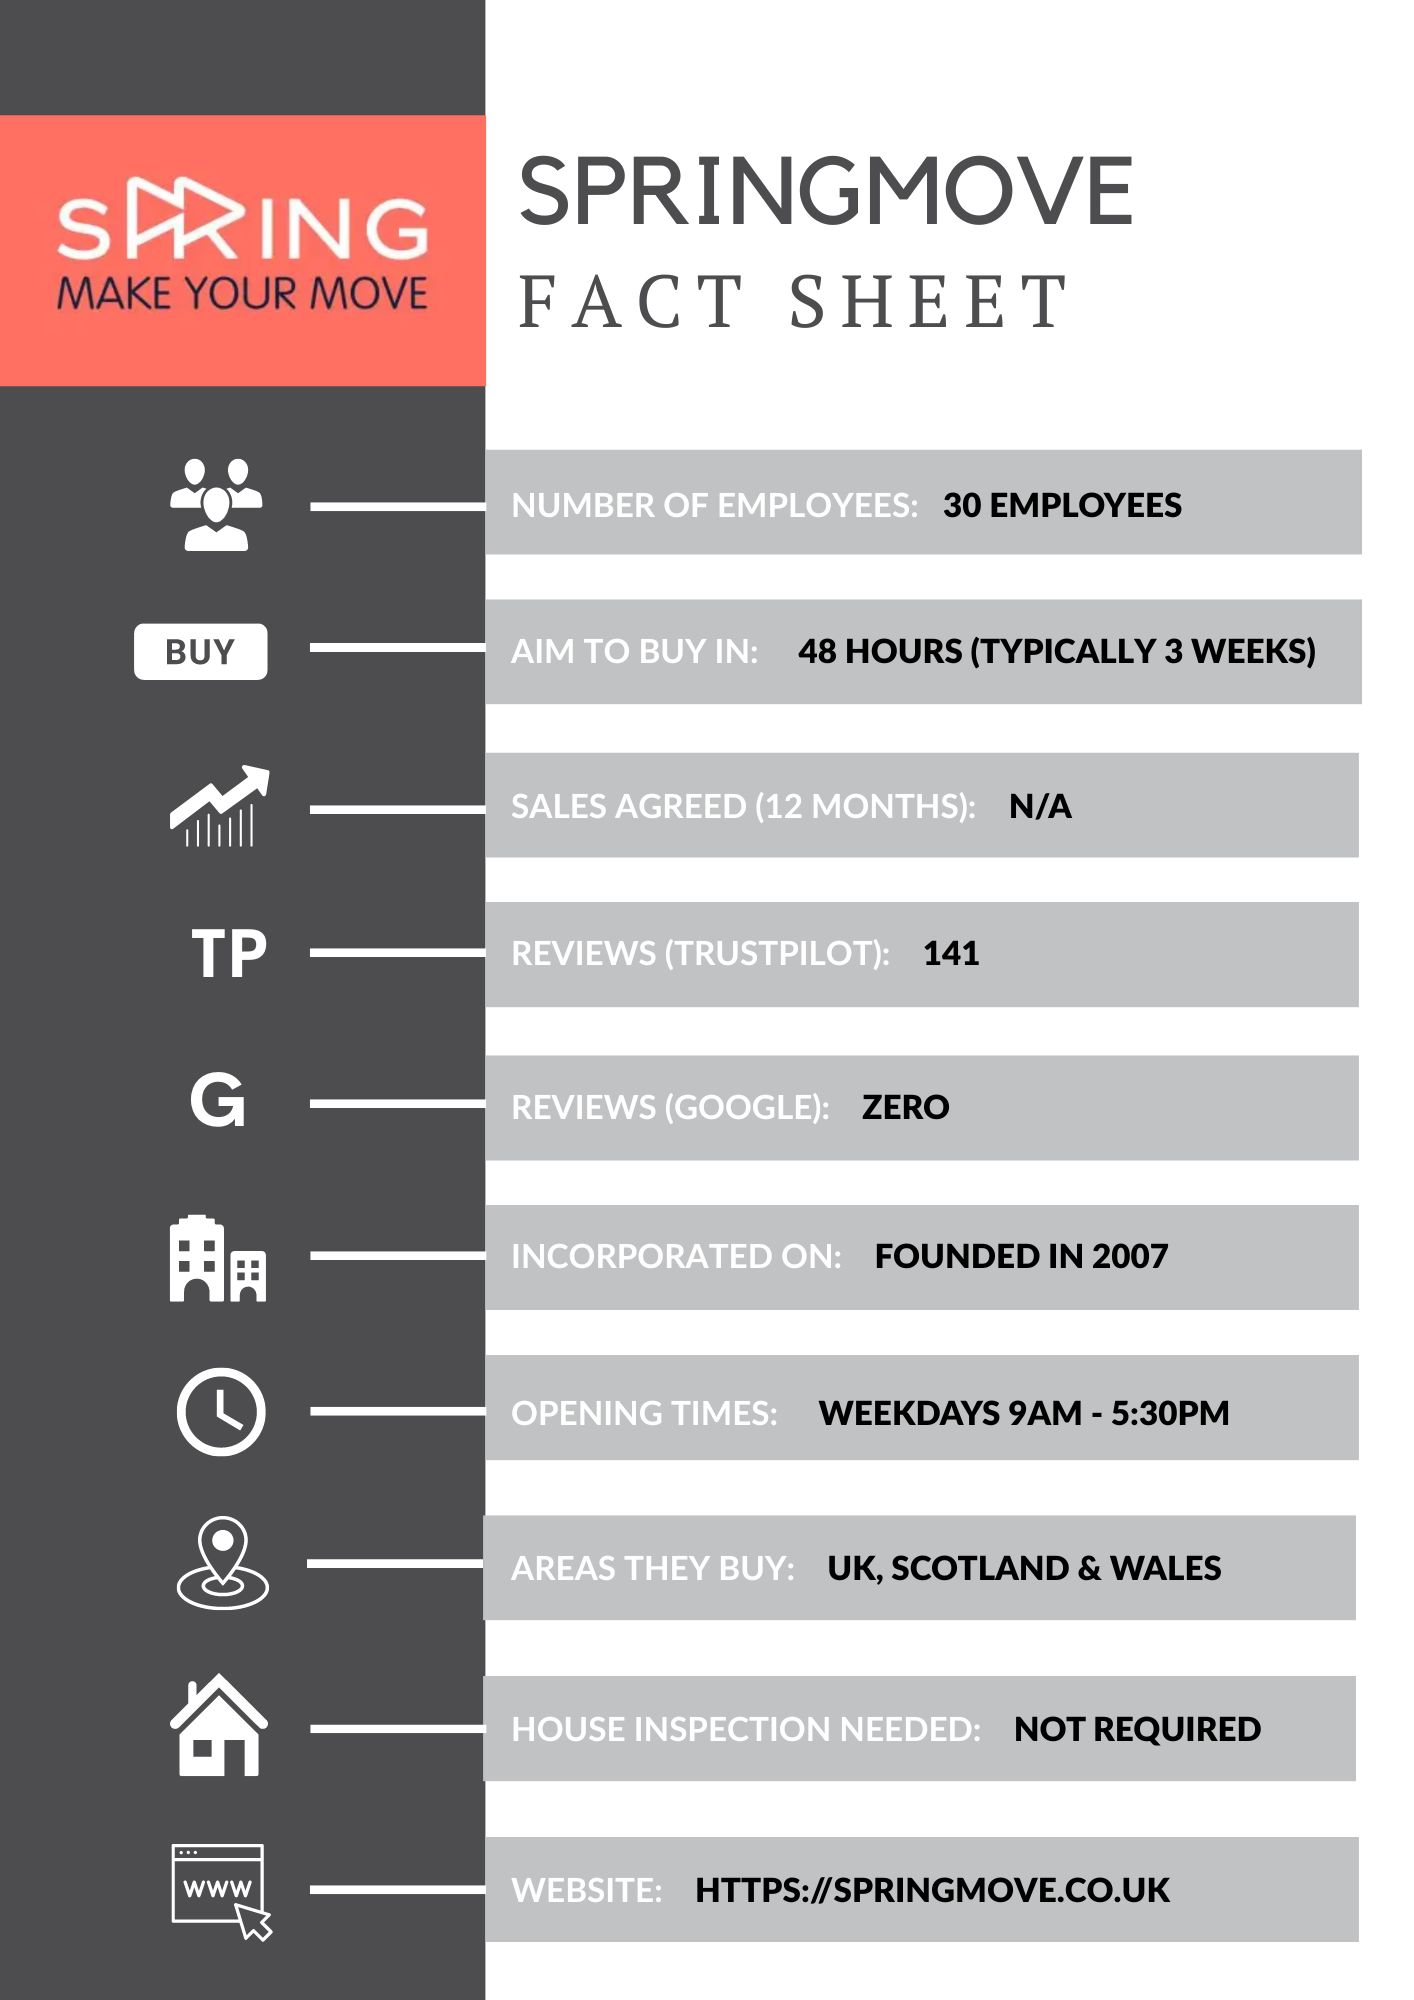 Springmove fact sheet